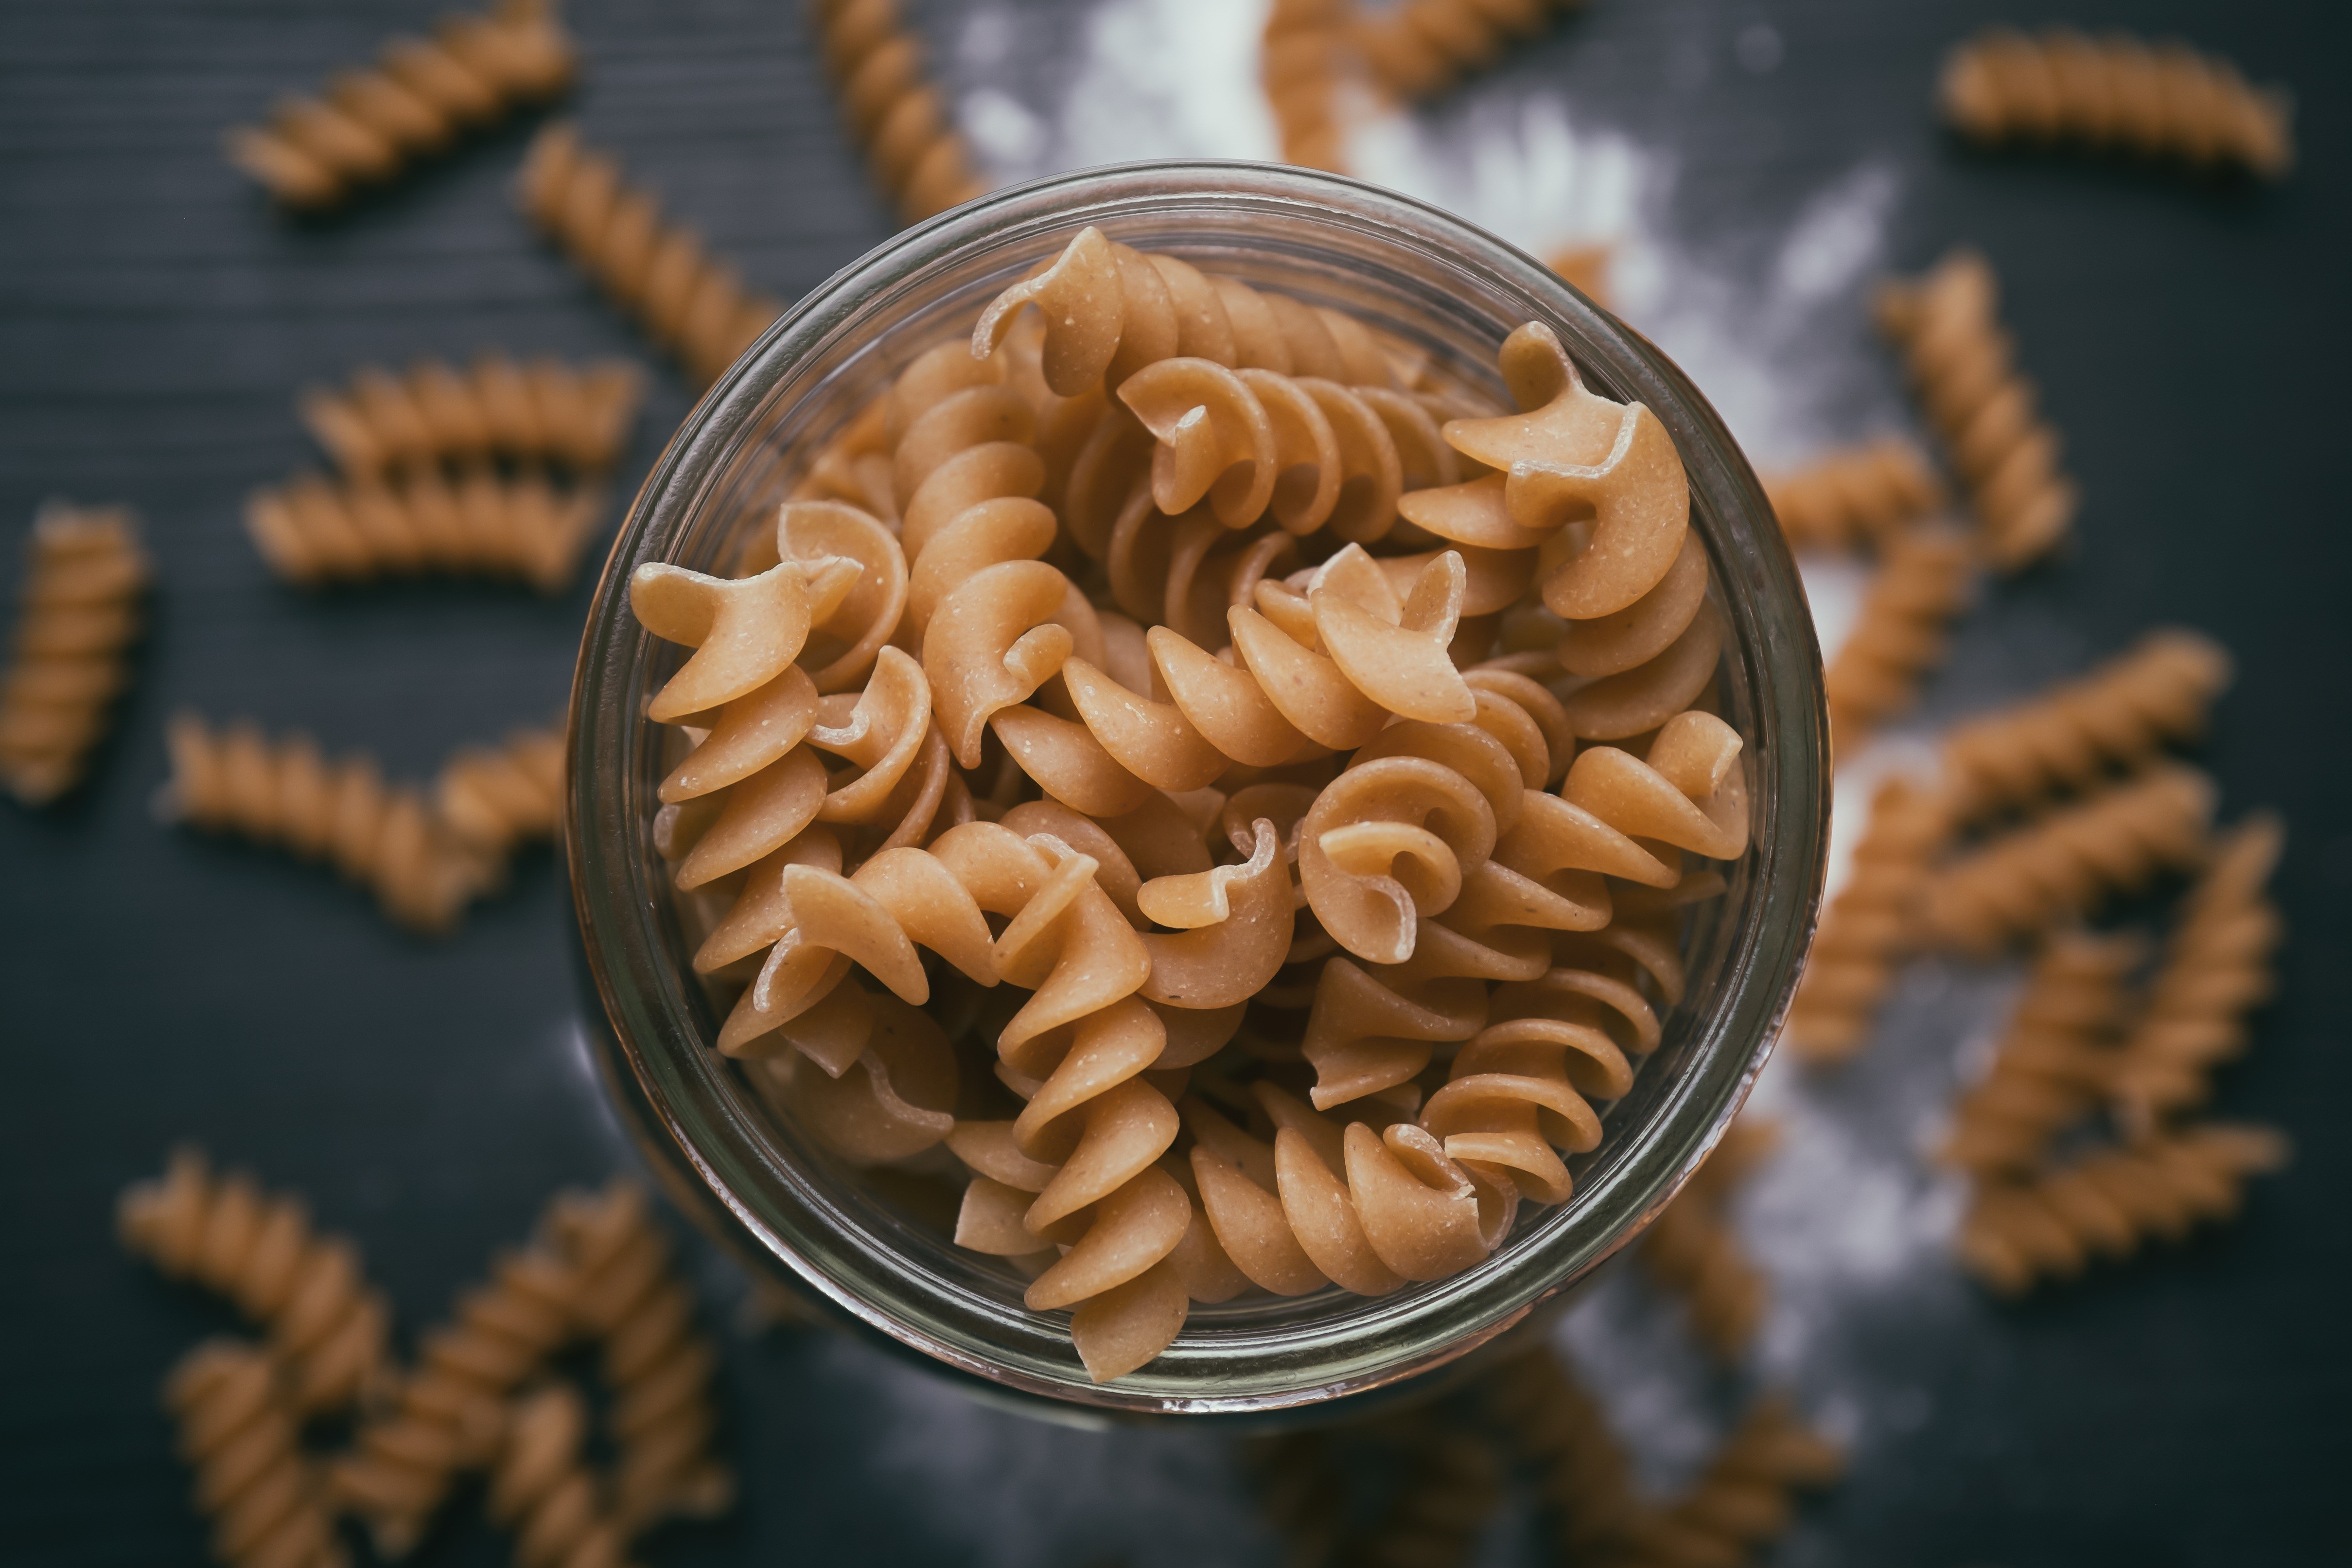 dry pasta noodles